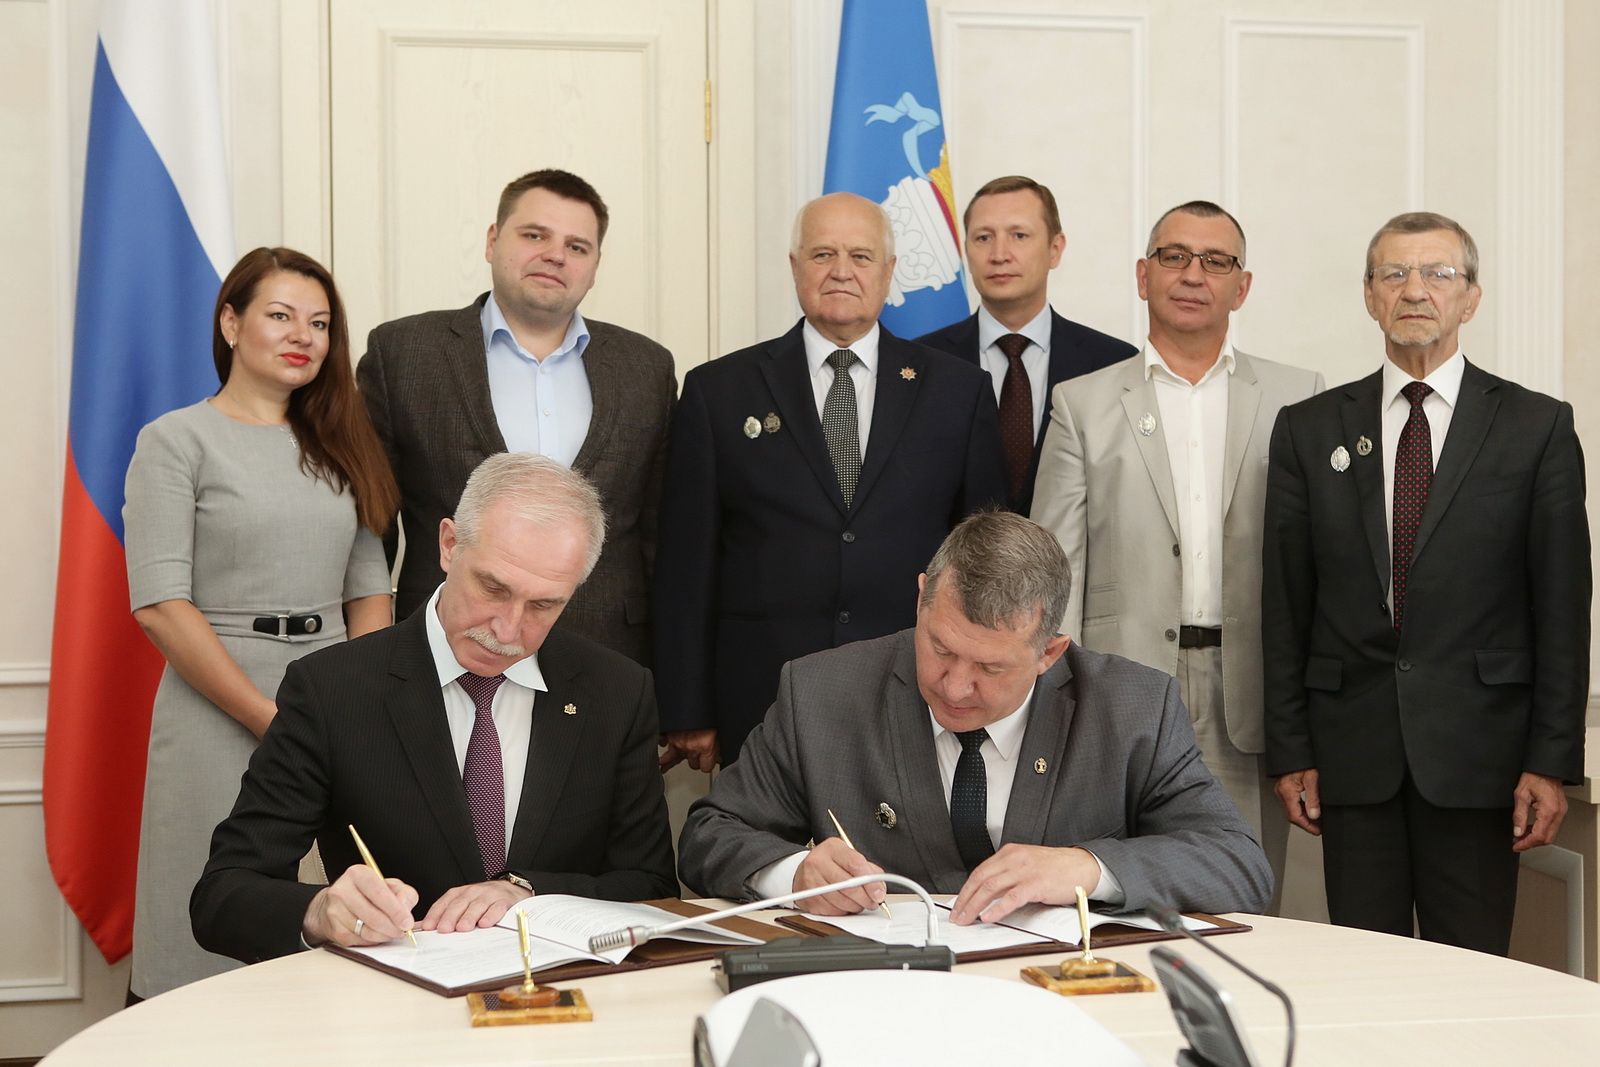 Ульяновское региональное отделение Ассоциации юристов России подписало соглашение с Адвокатской палатой региона